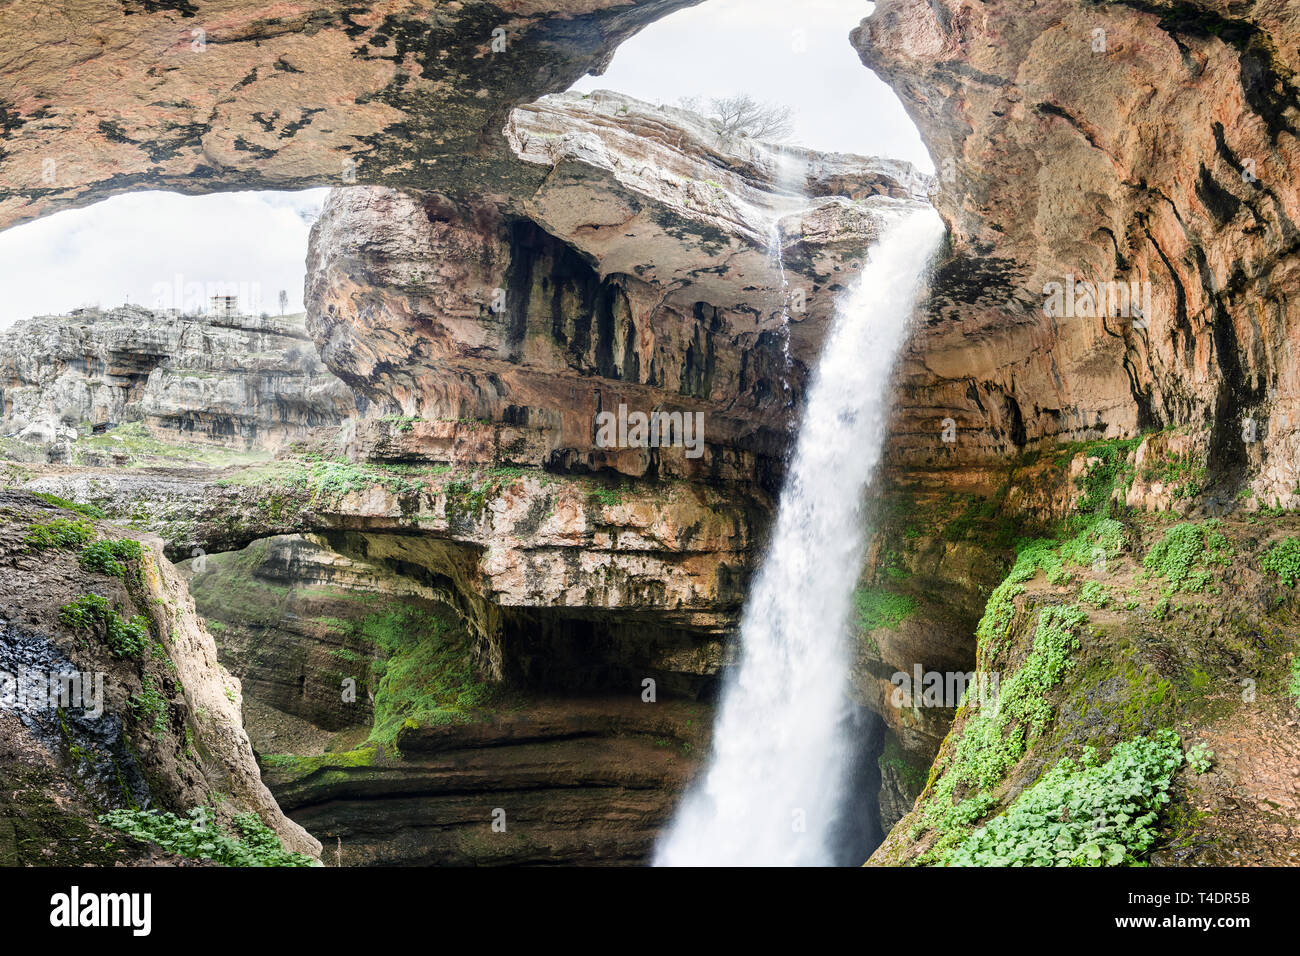 Baatara Schlucht Wasserfall und den drei natürlichen Brücken, Tannourine, Libanon Stockfoto